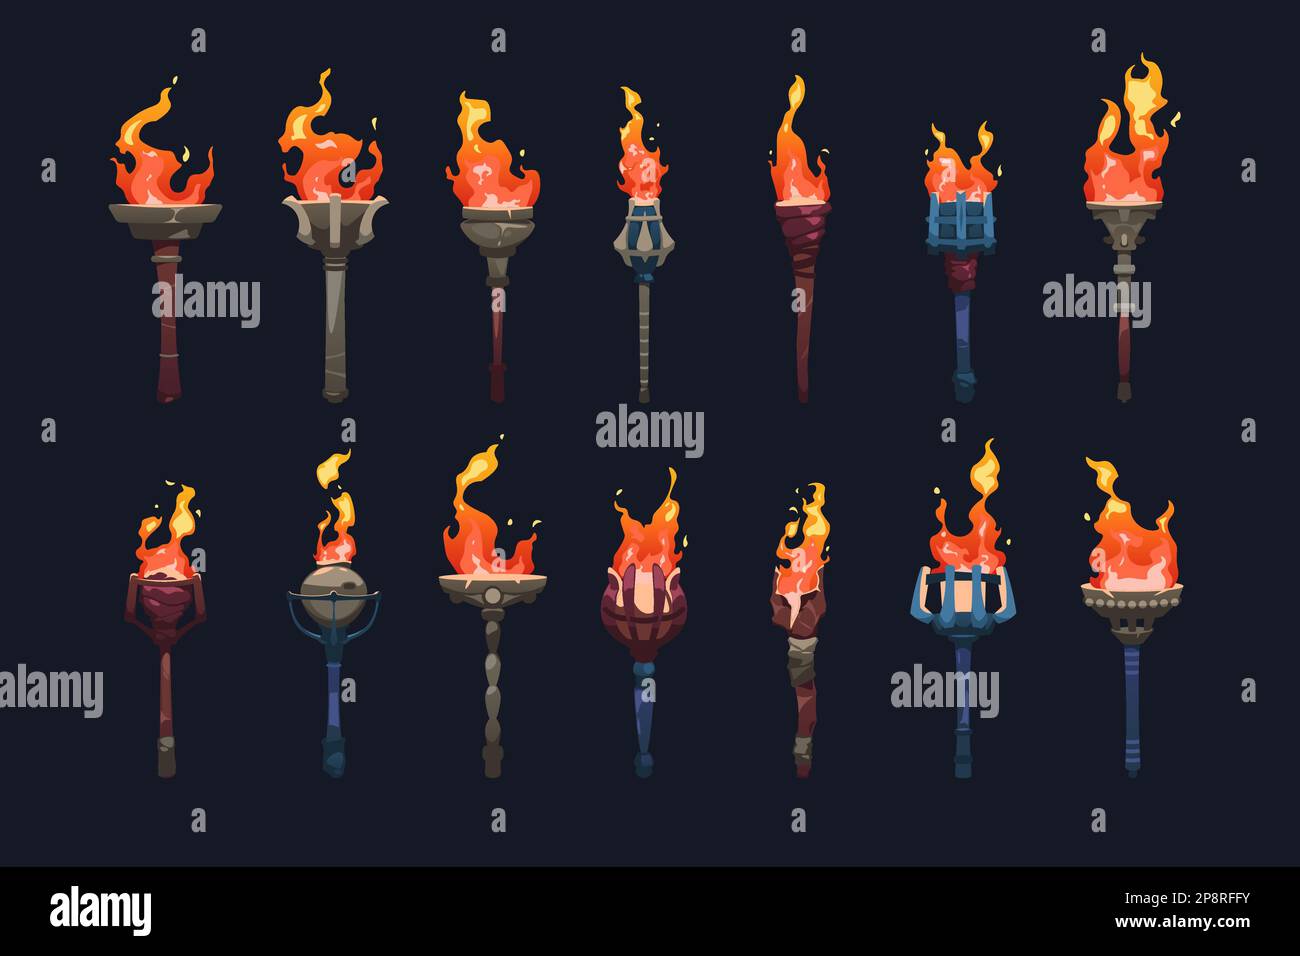 Mittelalterliche Fackel. Animationsset mit brennenden Feuerelementen und uraltem Stab mit Flammen für das Design von Spielelementen. Vektorsammlung Stock Vektor